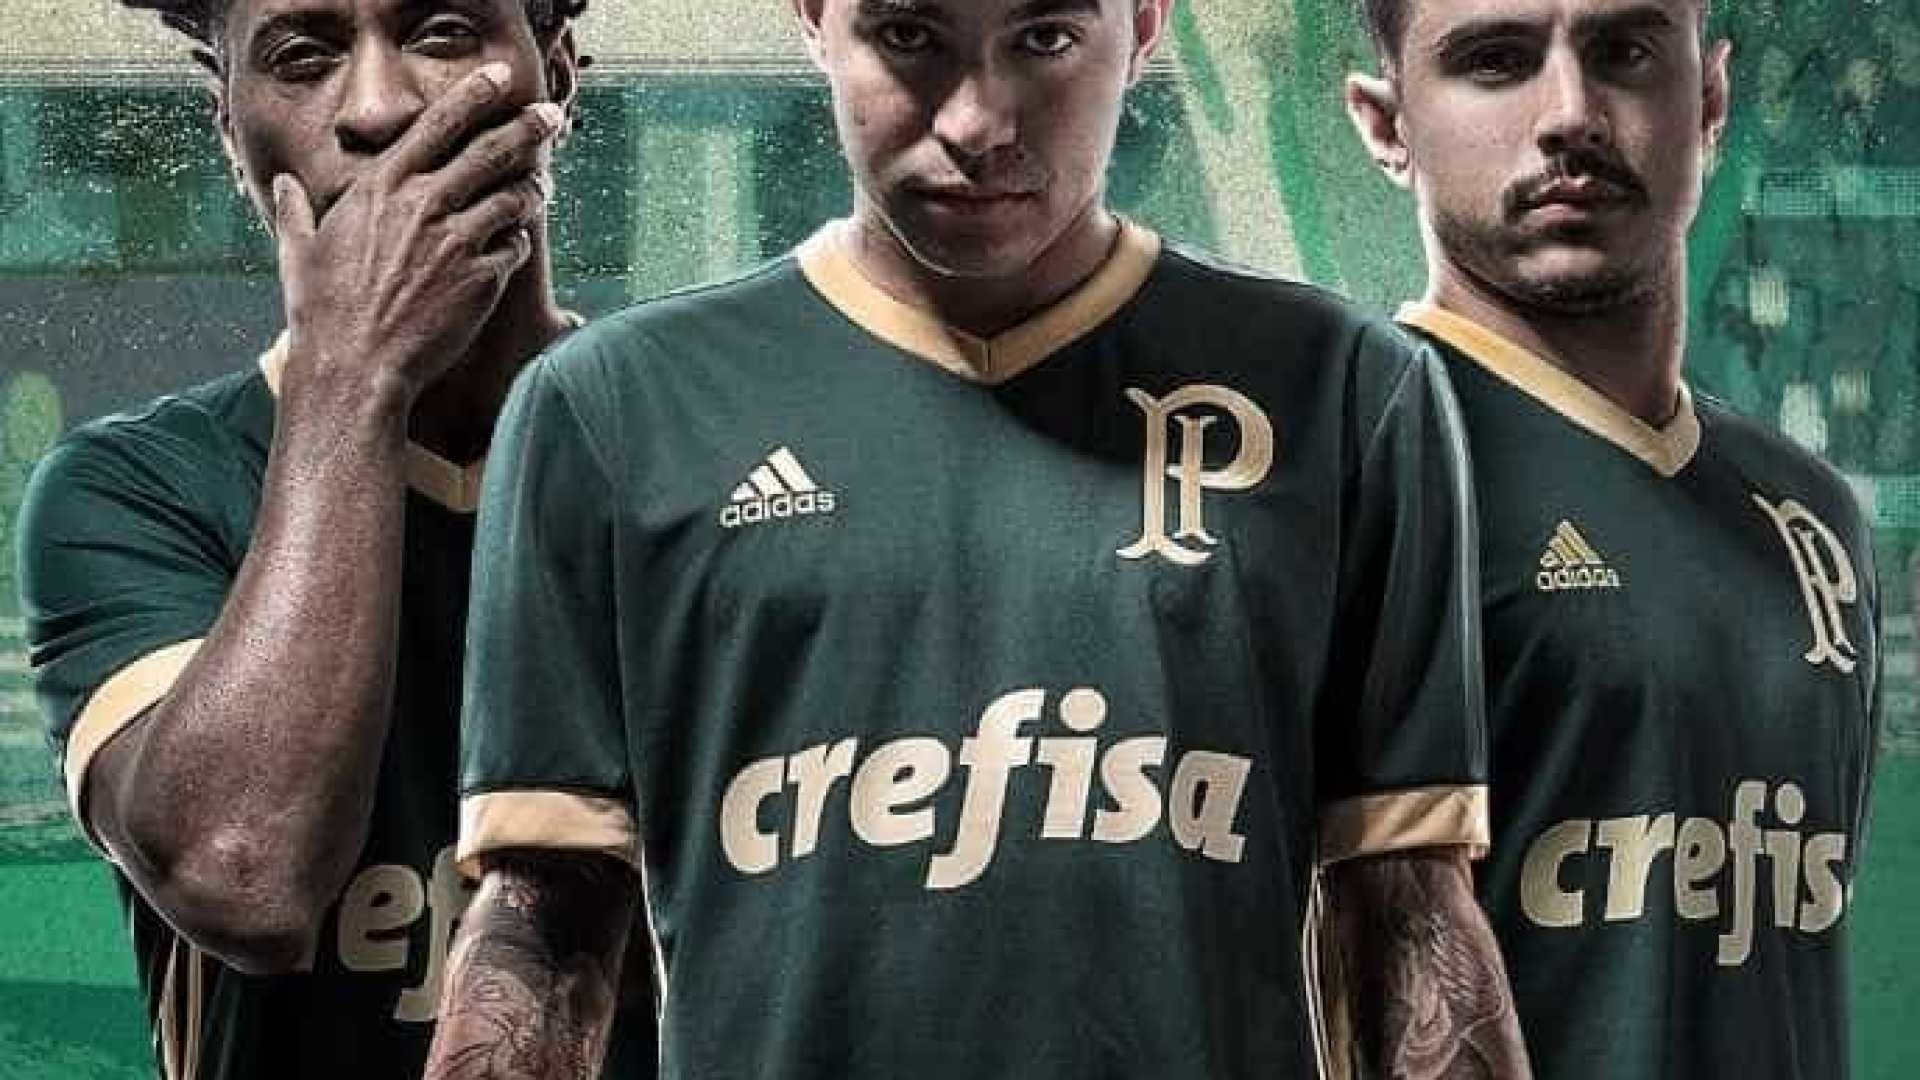 1920x1080 Palmeiras lanÃ§a nova camisa, inspirada em Arrancada Heroica